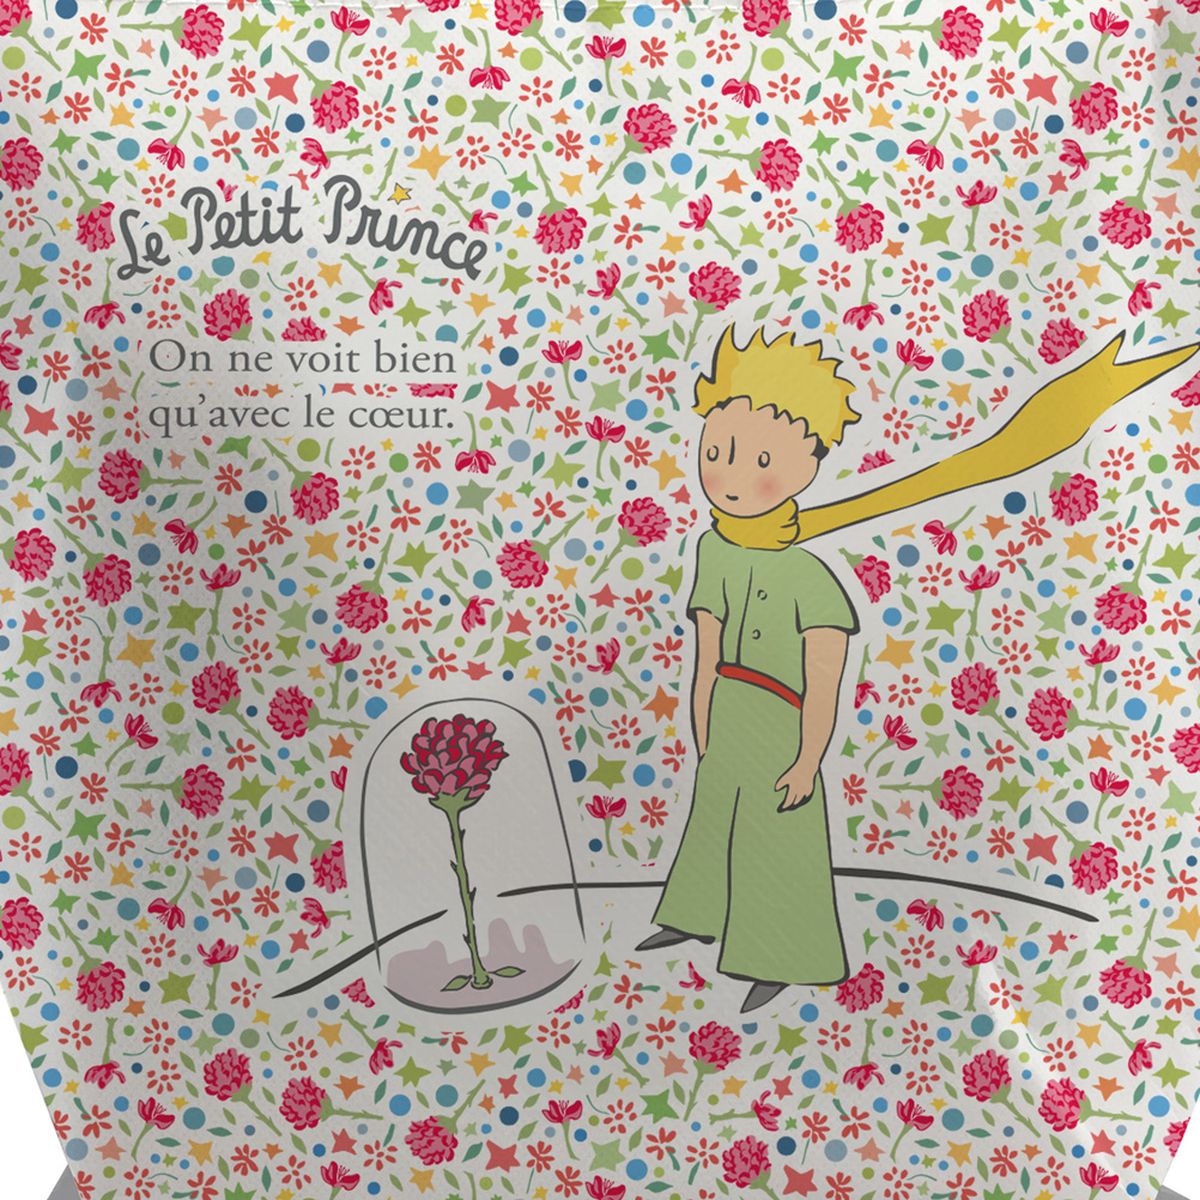 Kiub Collection The Little Prince Cool Bag